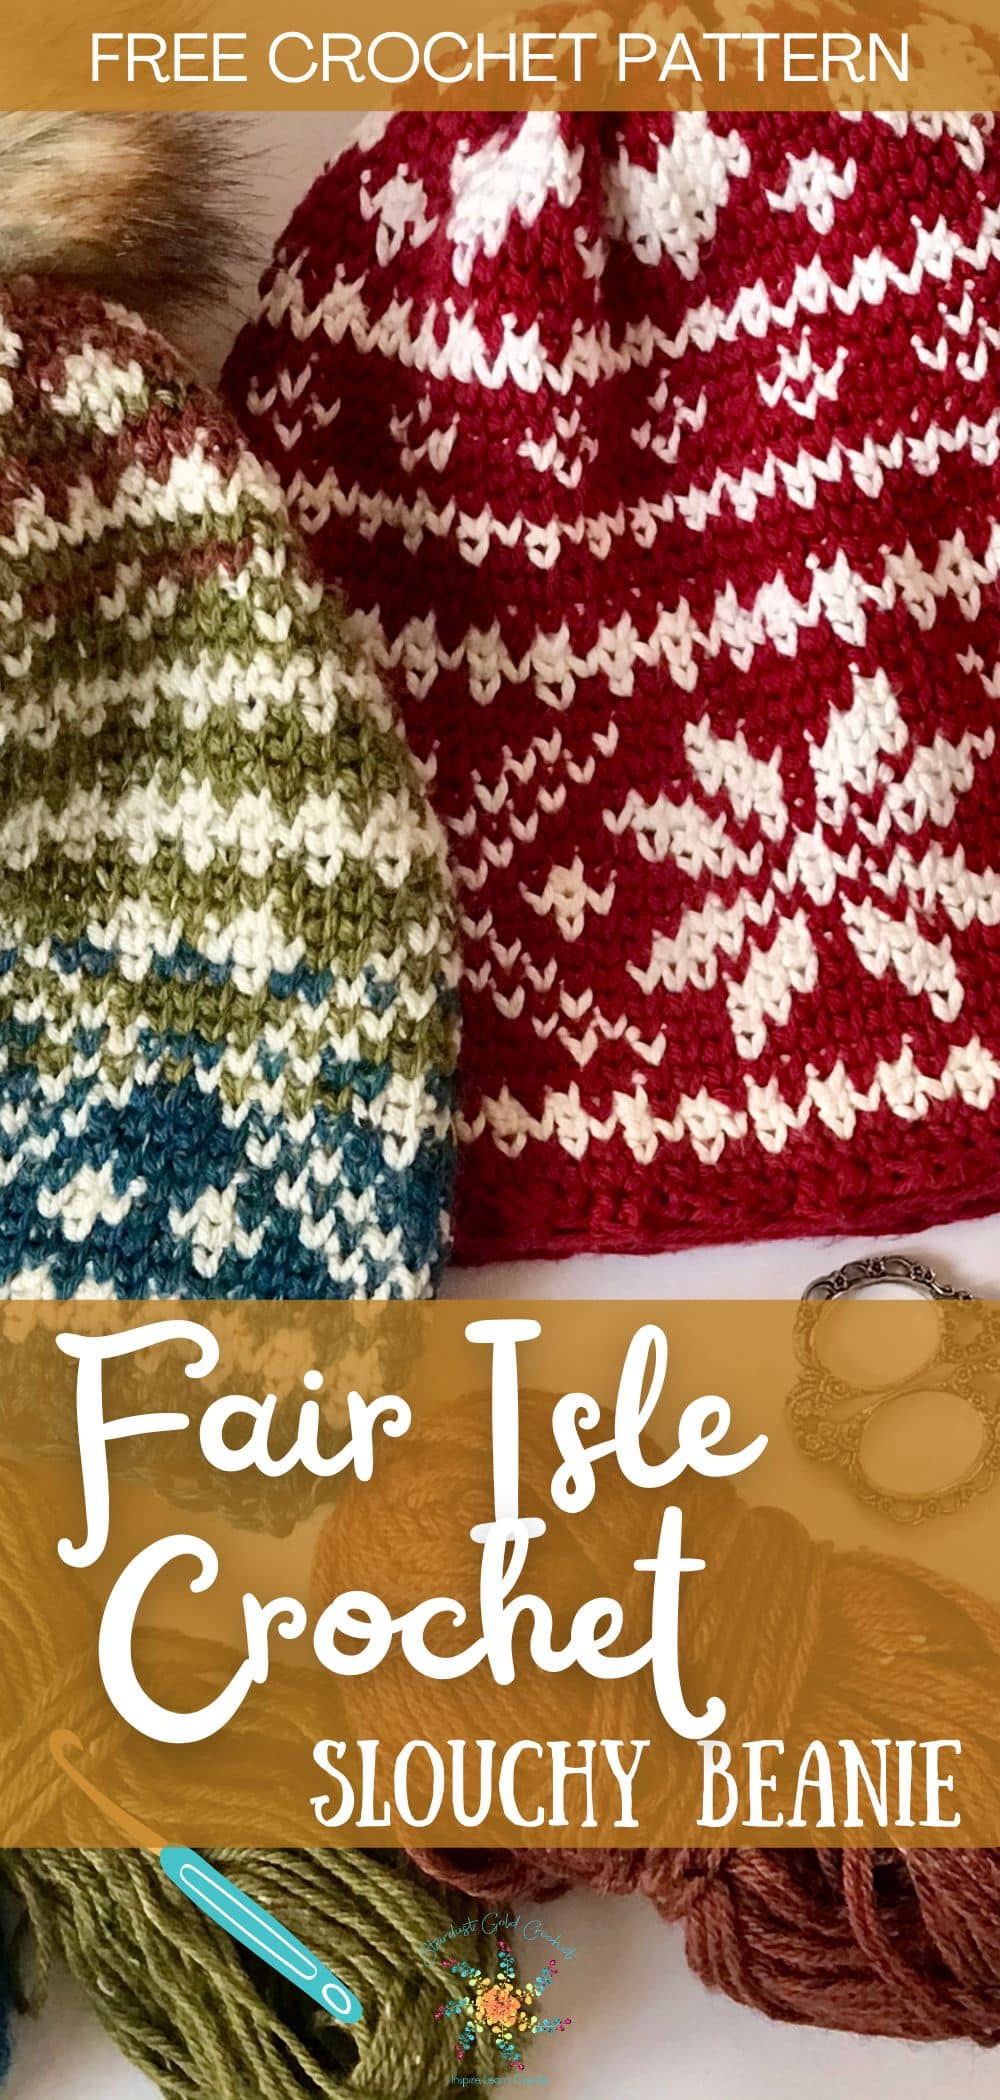 fair isle crochet slouchy beanie (1200 x 2000)